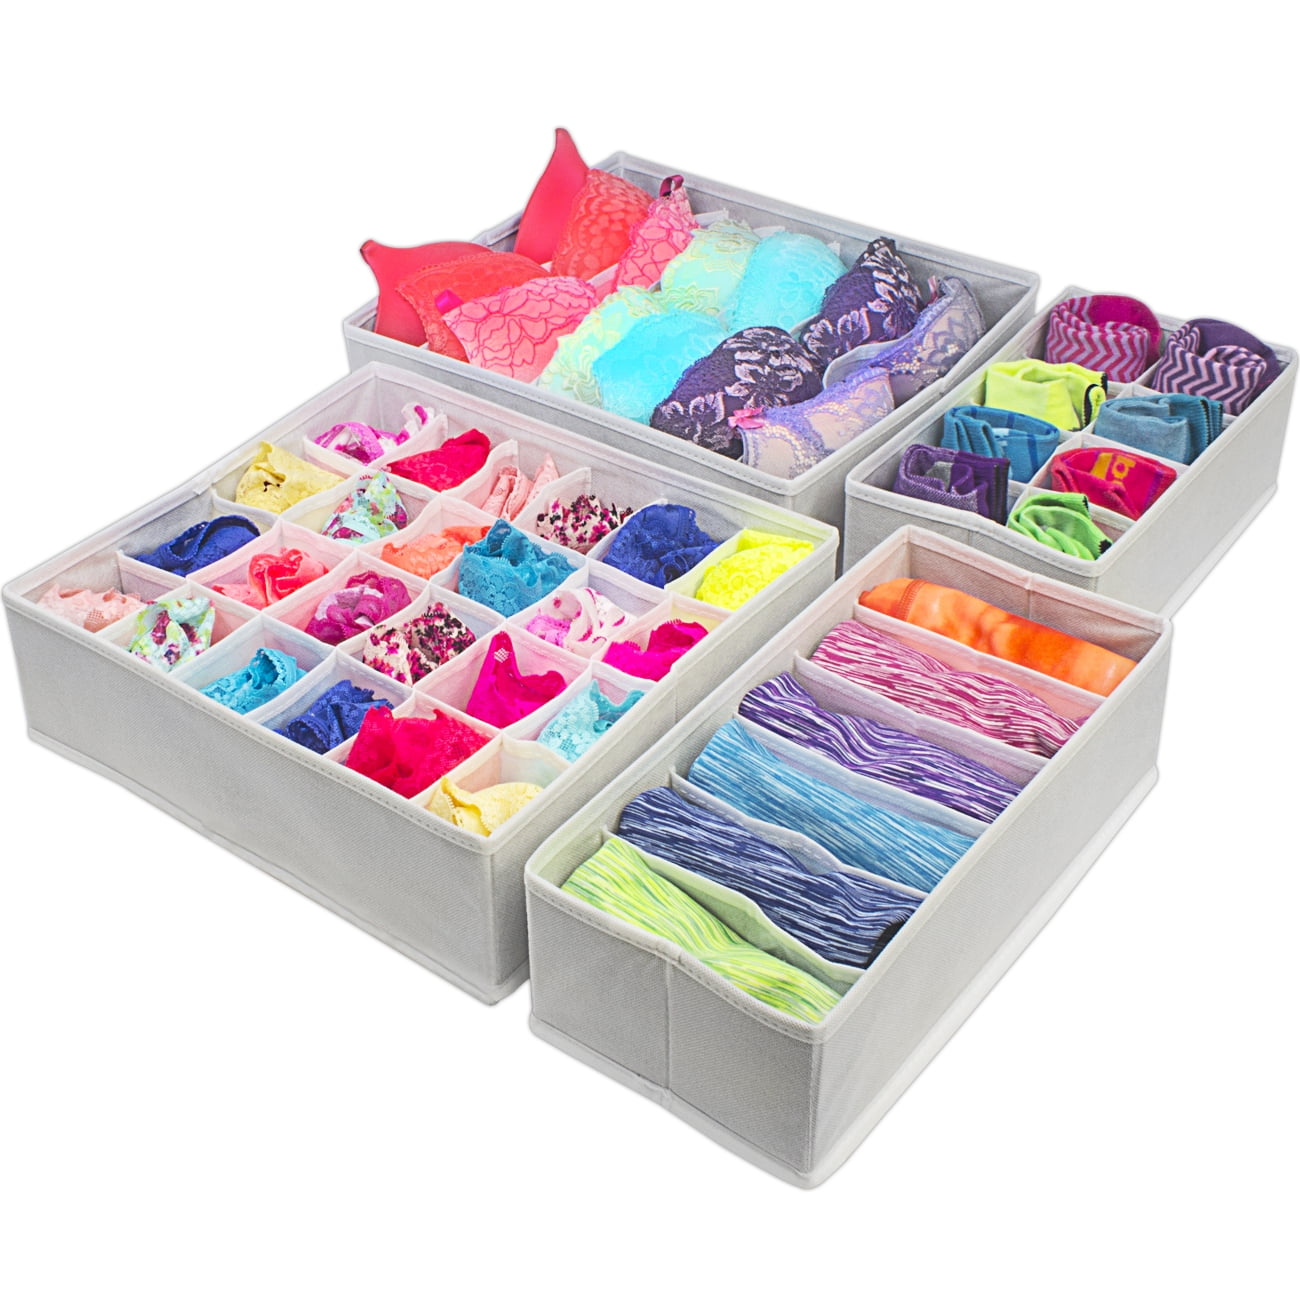 For Underwear Bra Socks Ties Home Storage Drawer Divider Closet Organizer Box 